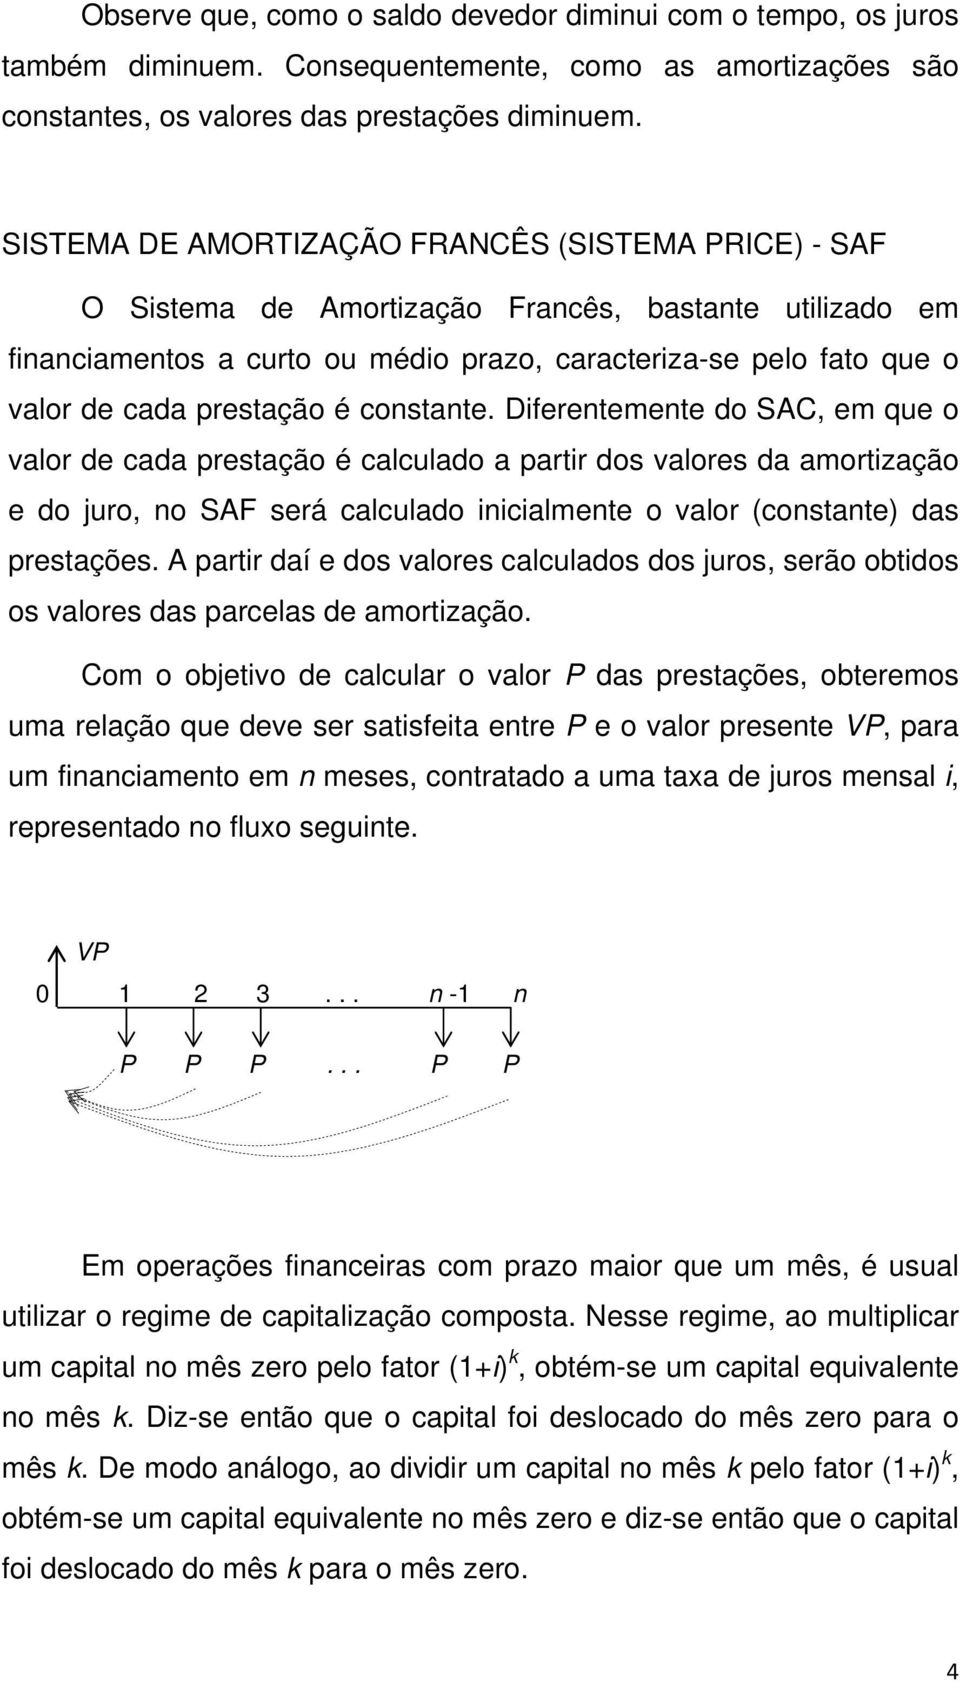 Dferetemete do SAC, em que o valor de cada prestação é calculado a partr dos valores da amortzação e do juro, o SAF será calculado calmete o valor (costate das prestações.